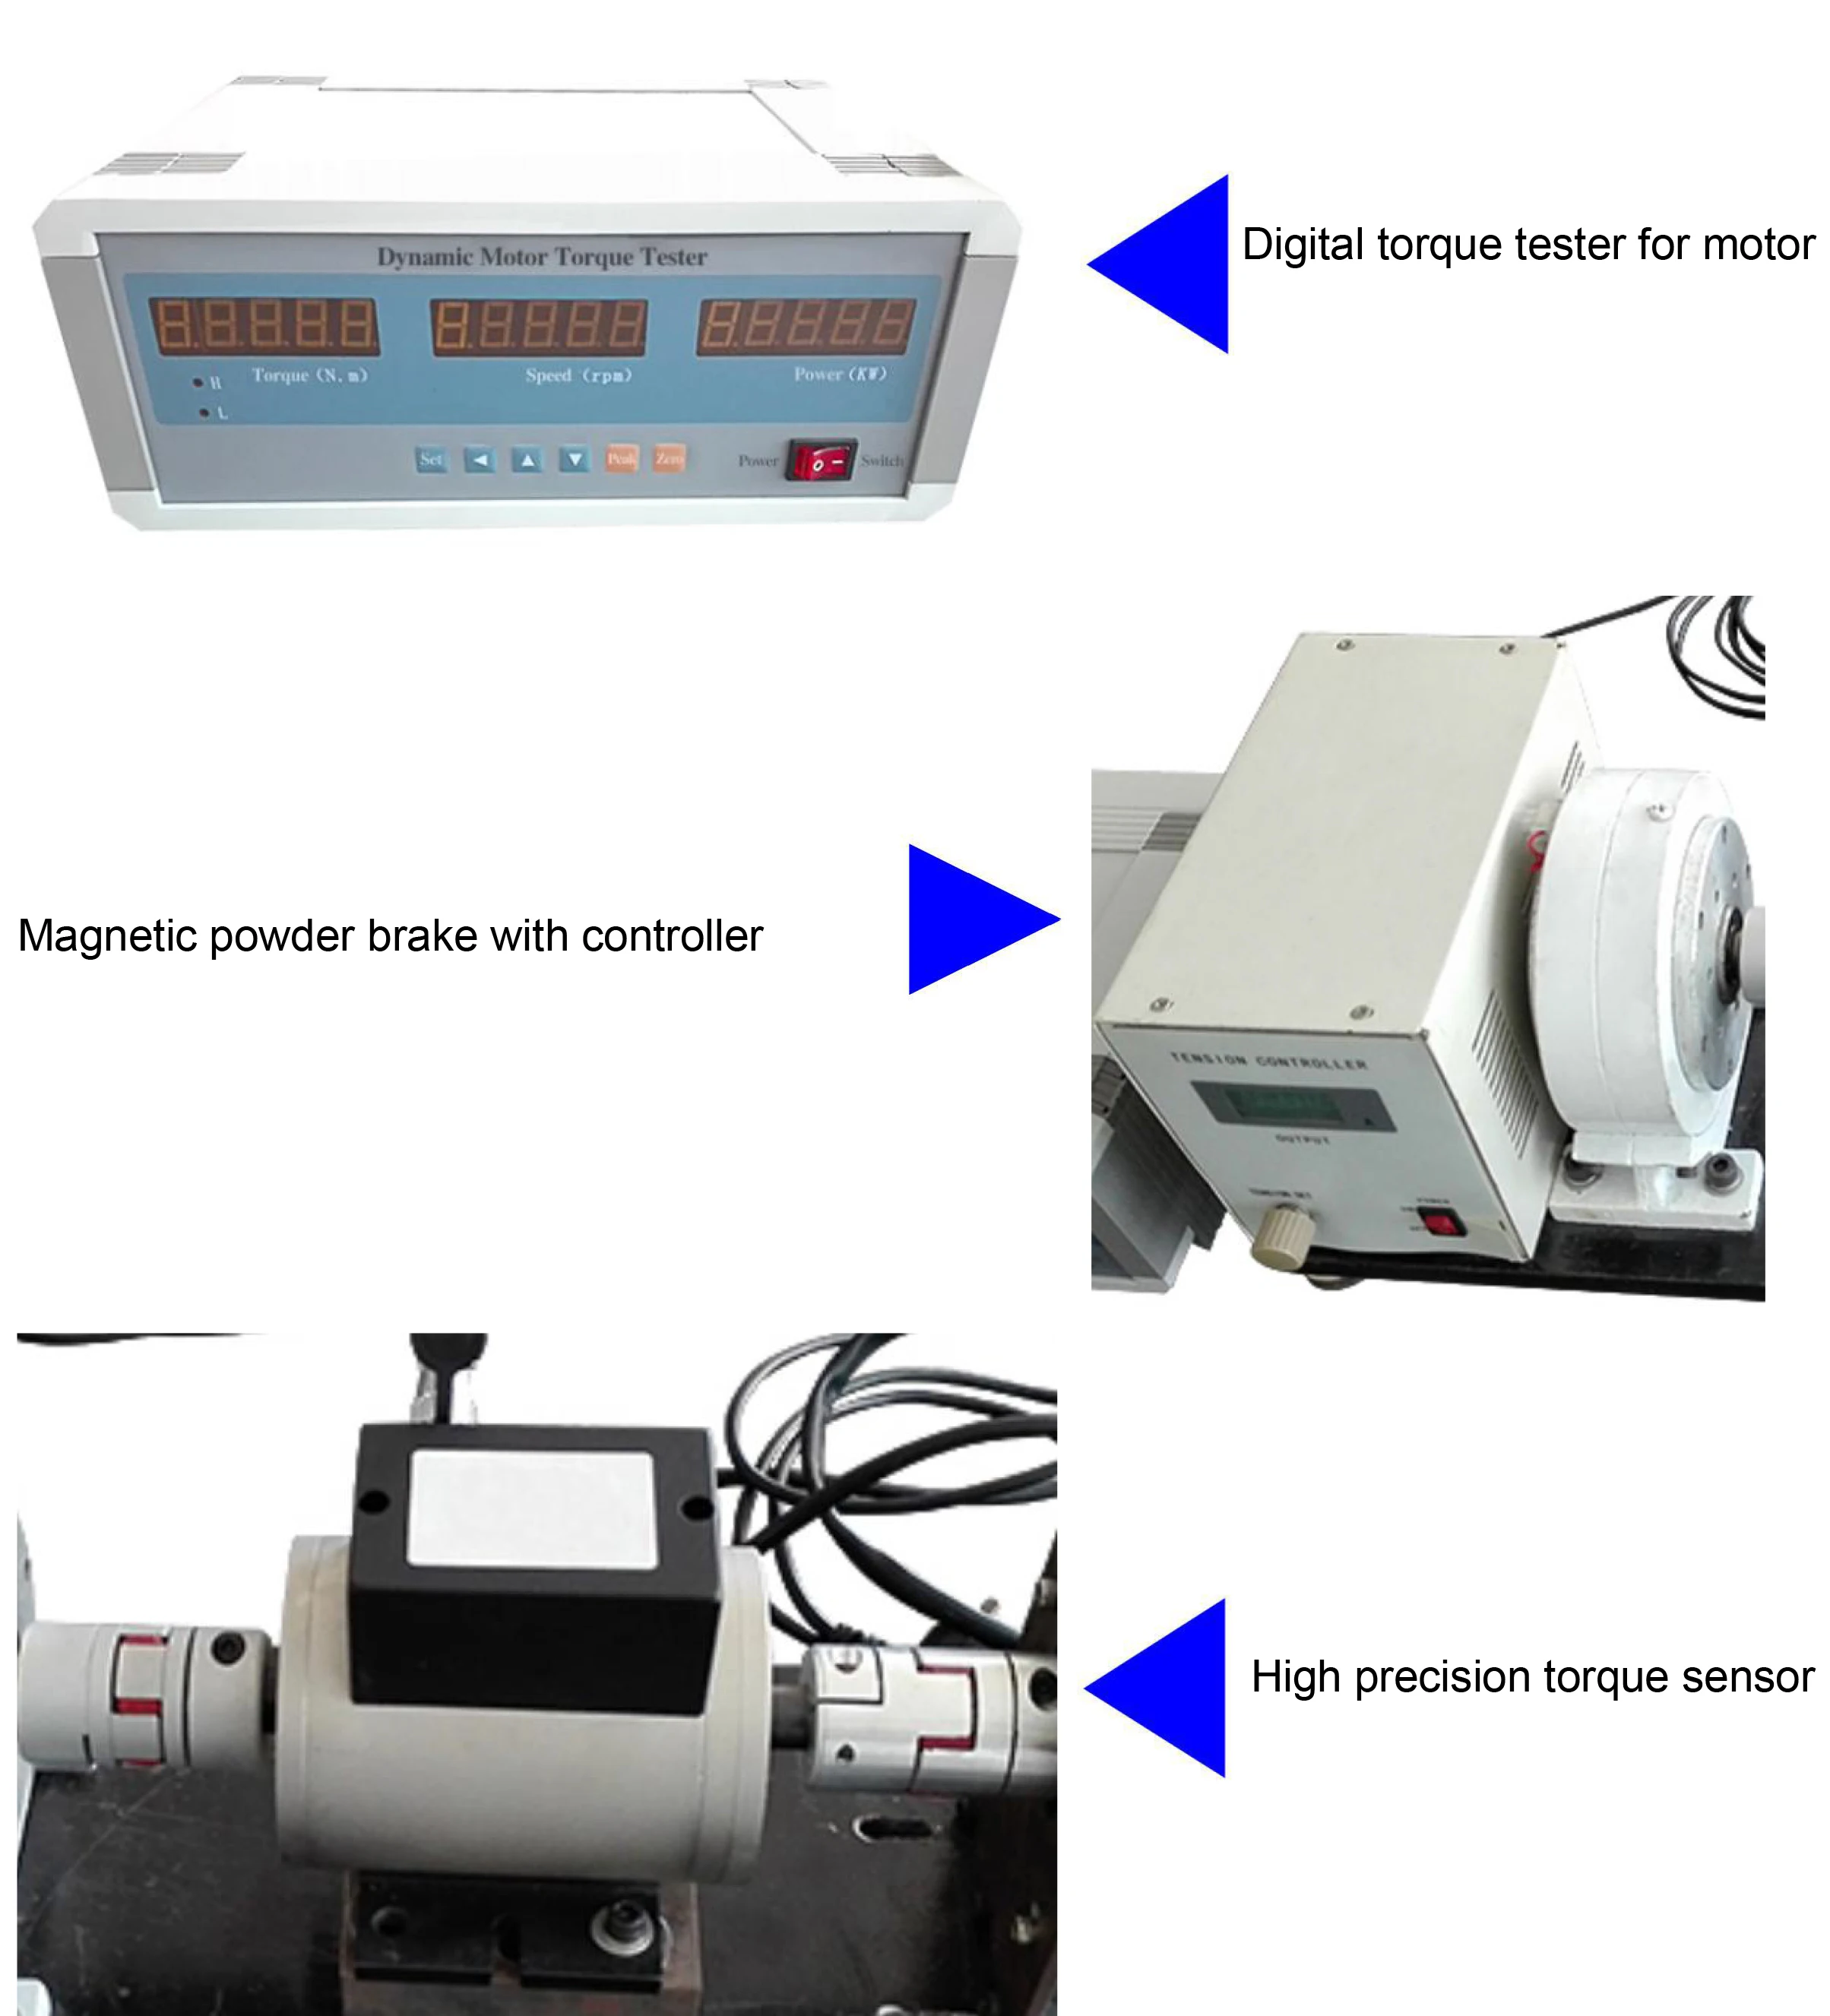 Easy installing measurement analysis electric test gauge digital display dynamic motor torque meter